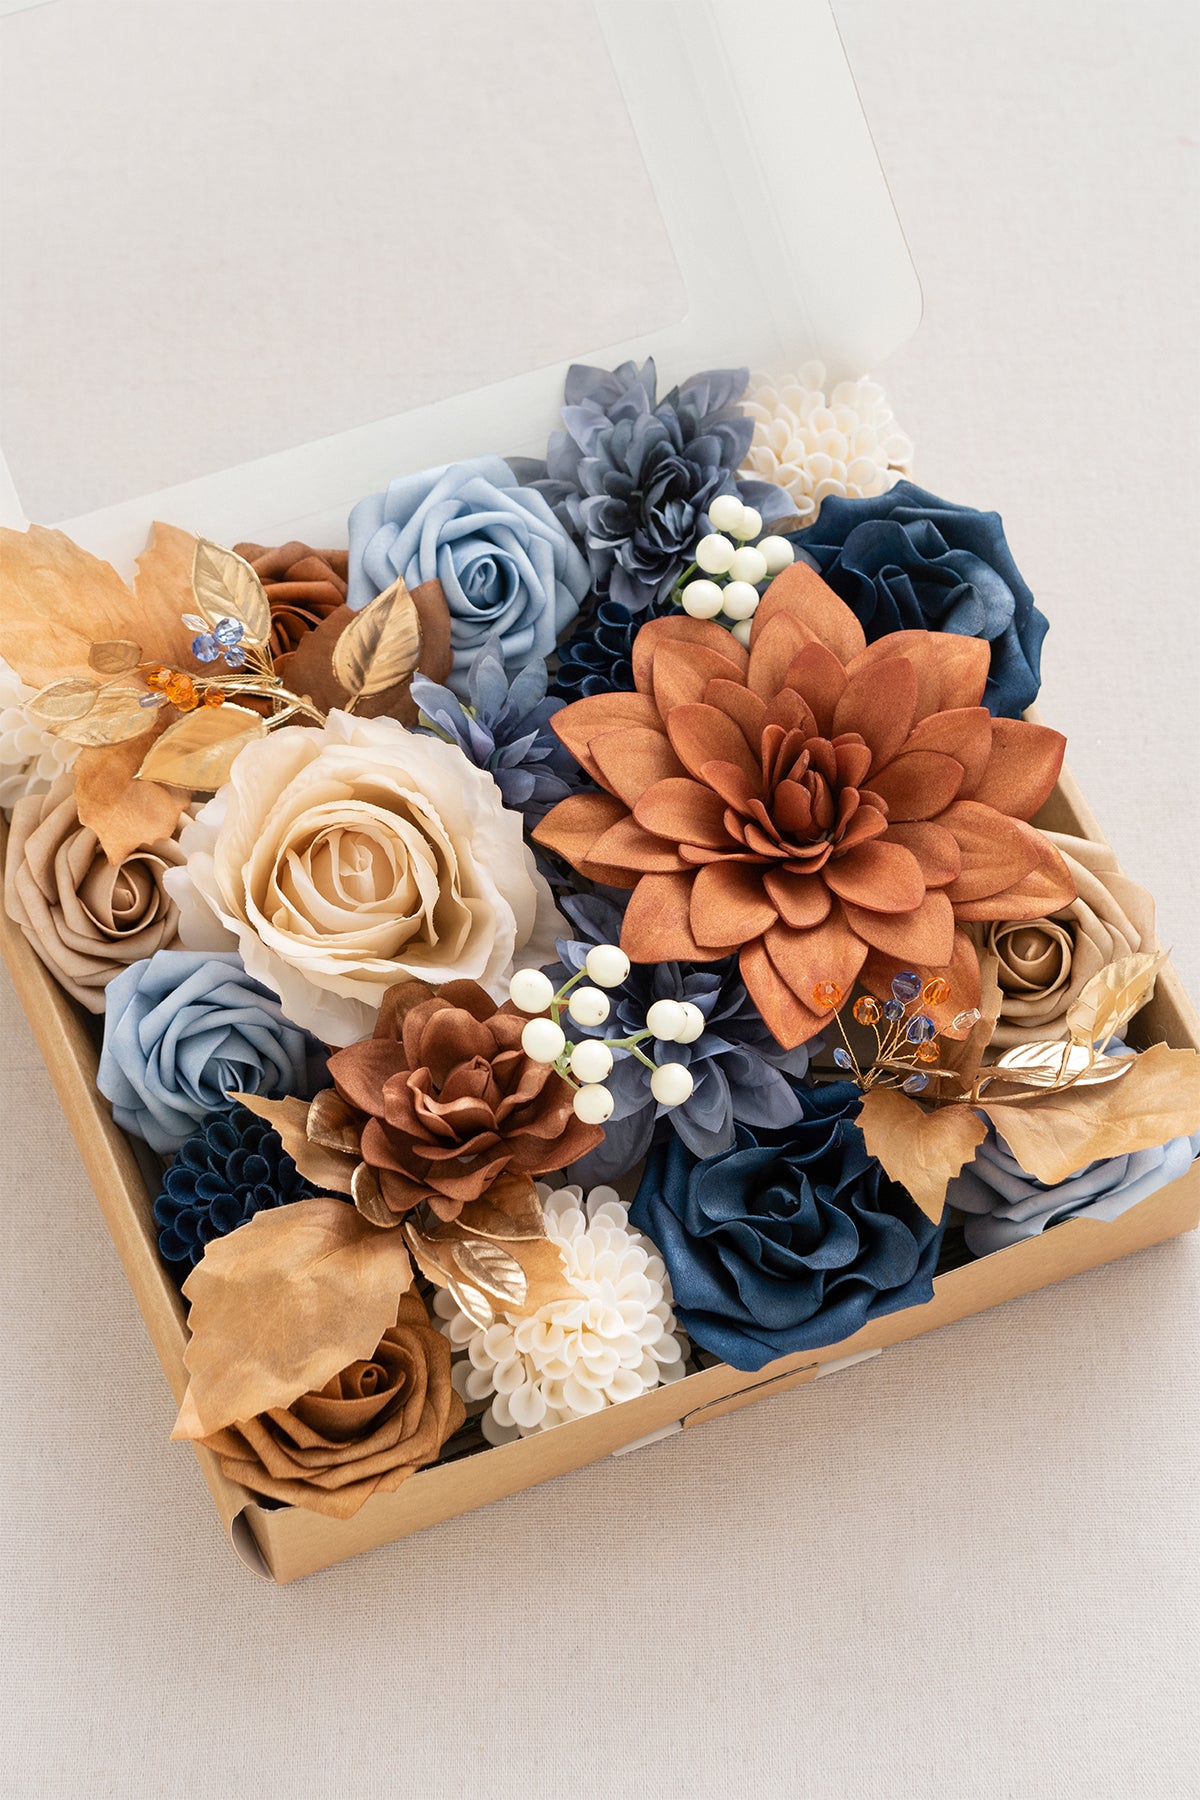 Terracotta Designer Flower Boxes